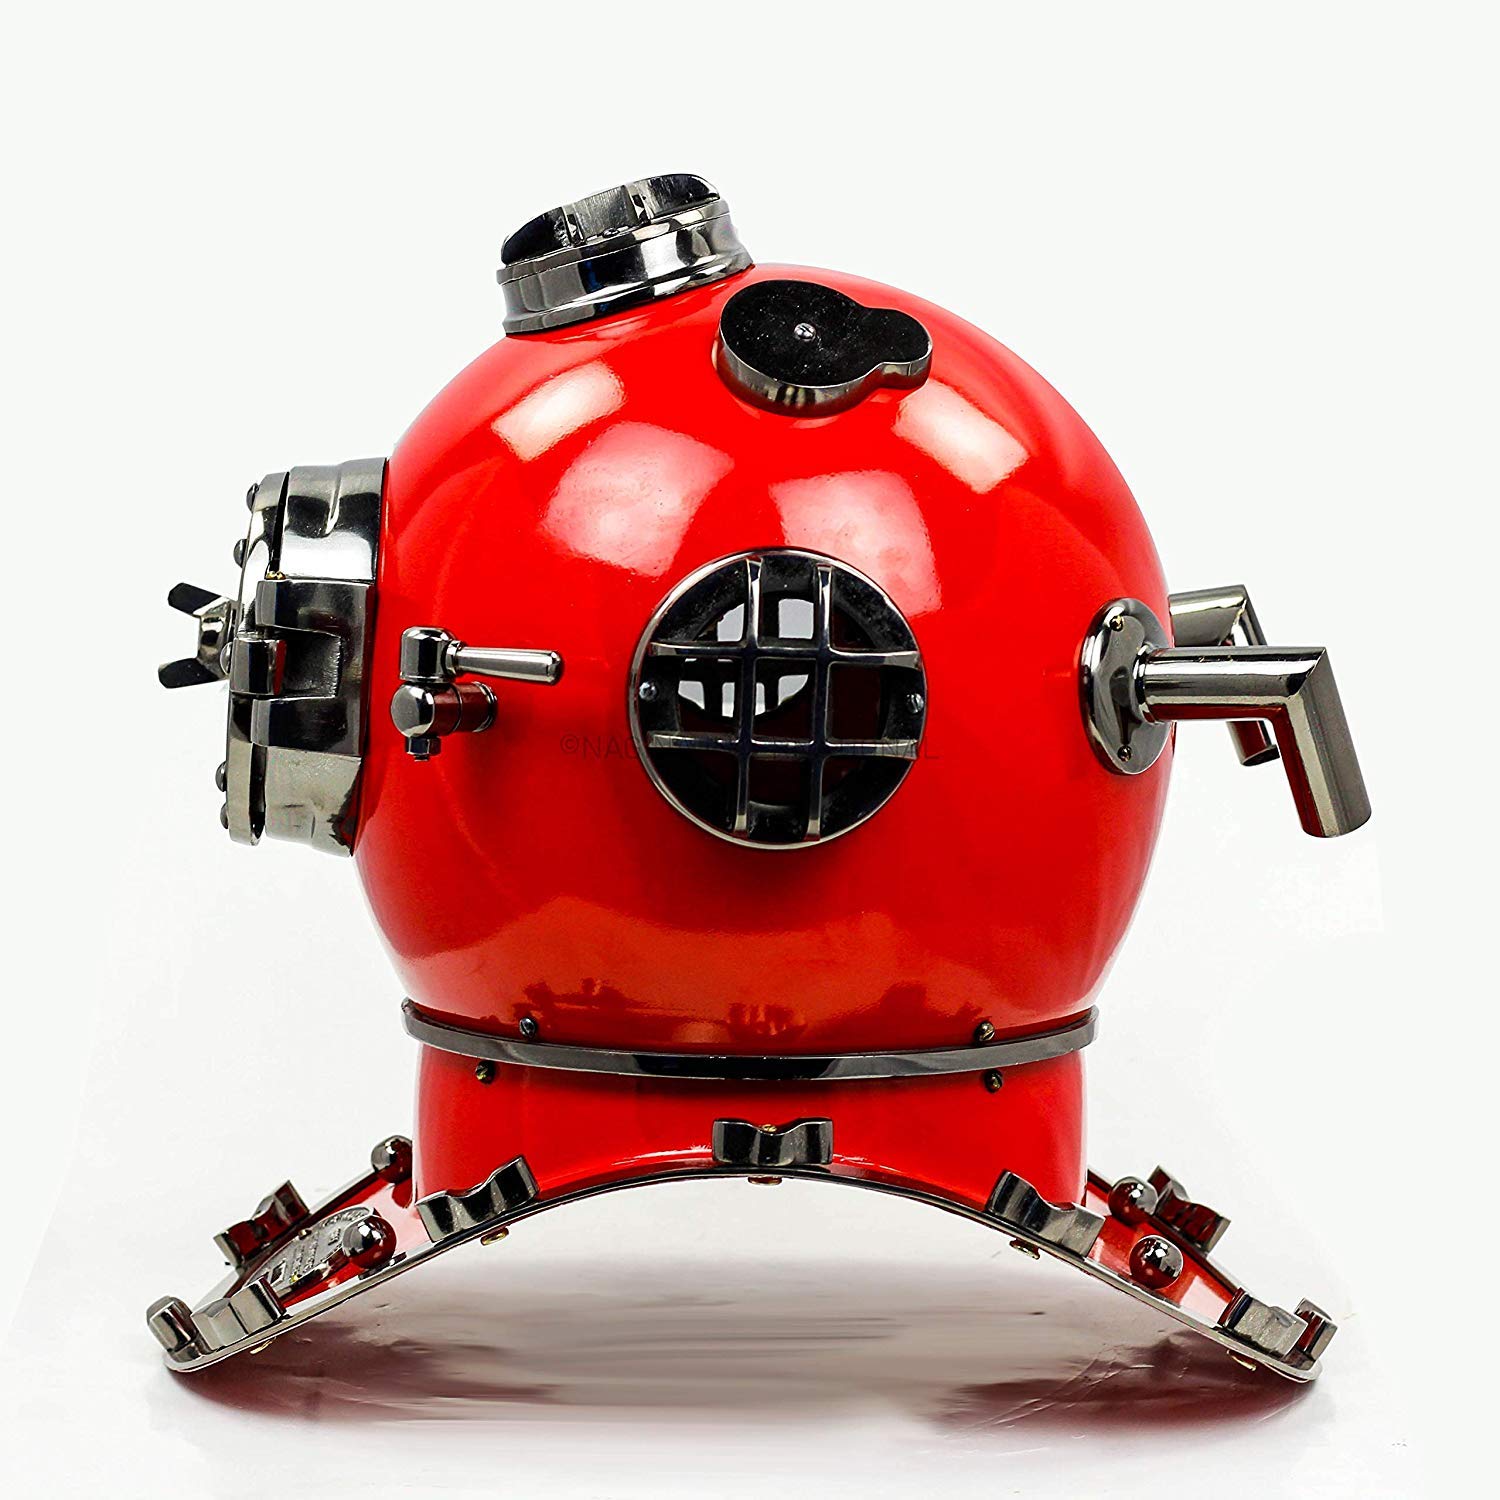 18" Scuba Diving Helmet (Red Cobalt) - image 2 of 6